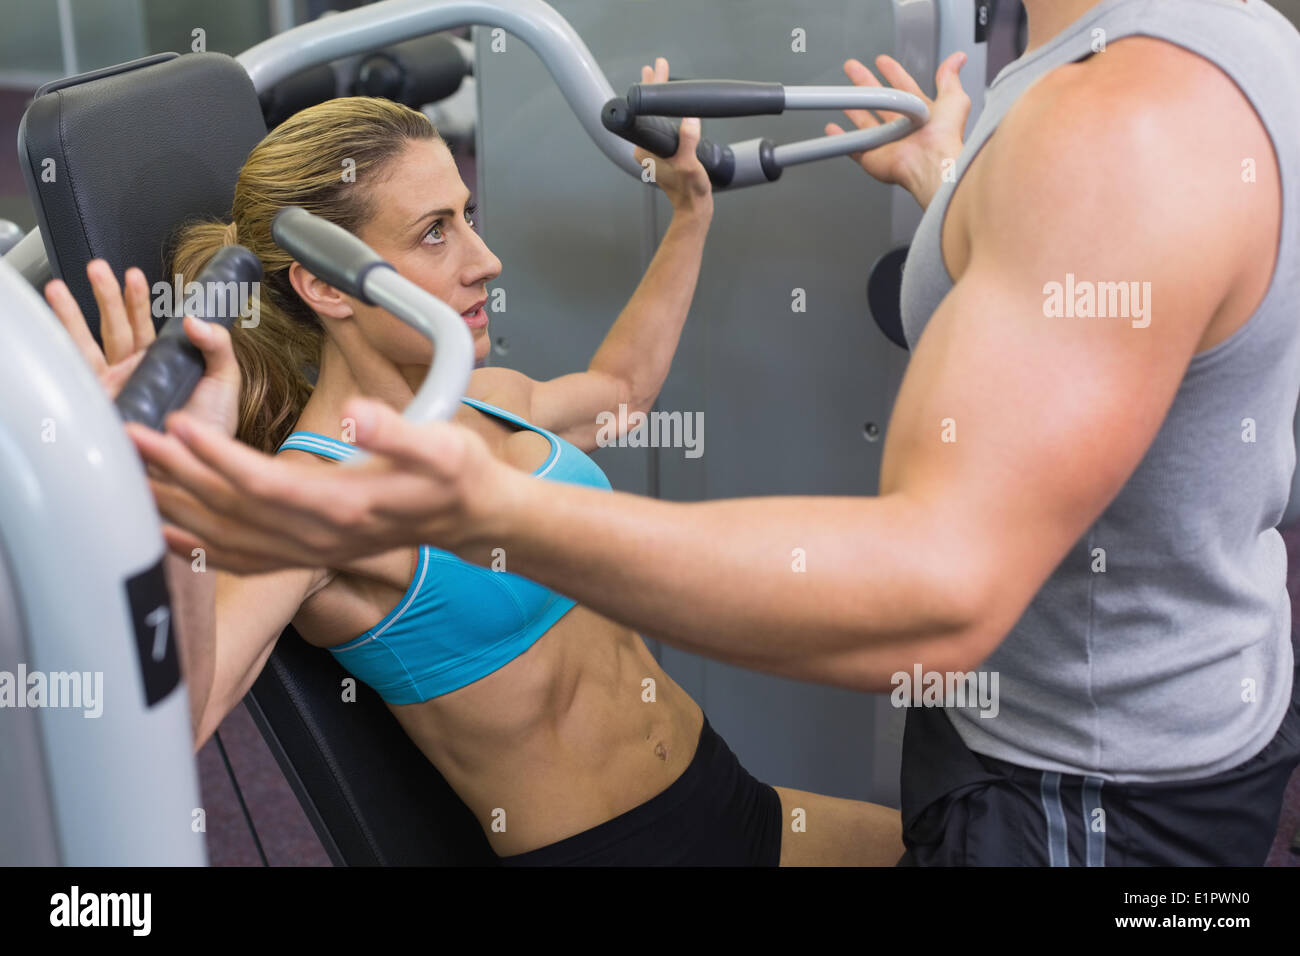 Persönlicher Trainer coaching weibliche Bodybuilder mit Gerät für Krafttraining Stockfoto